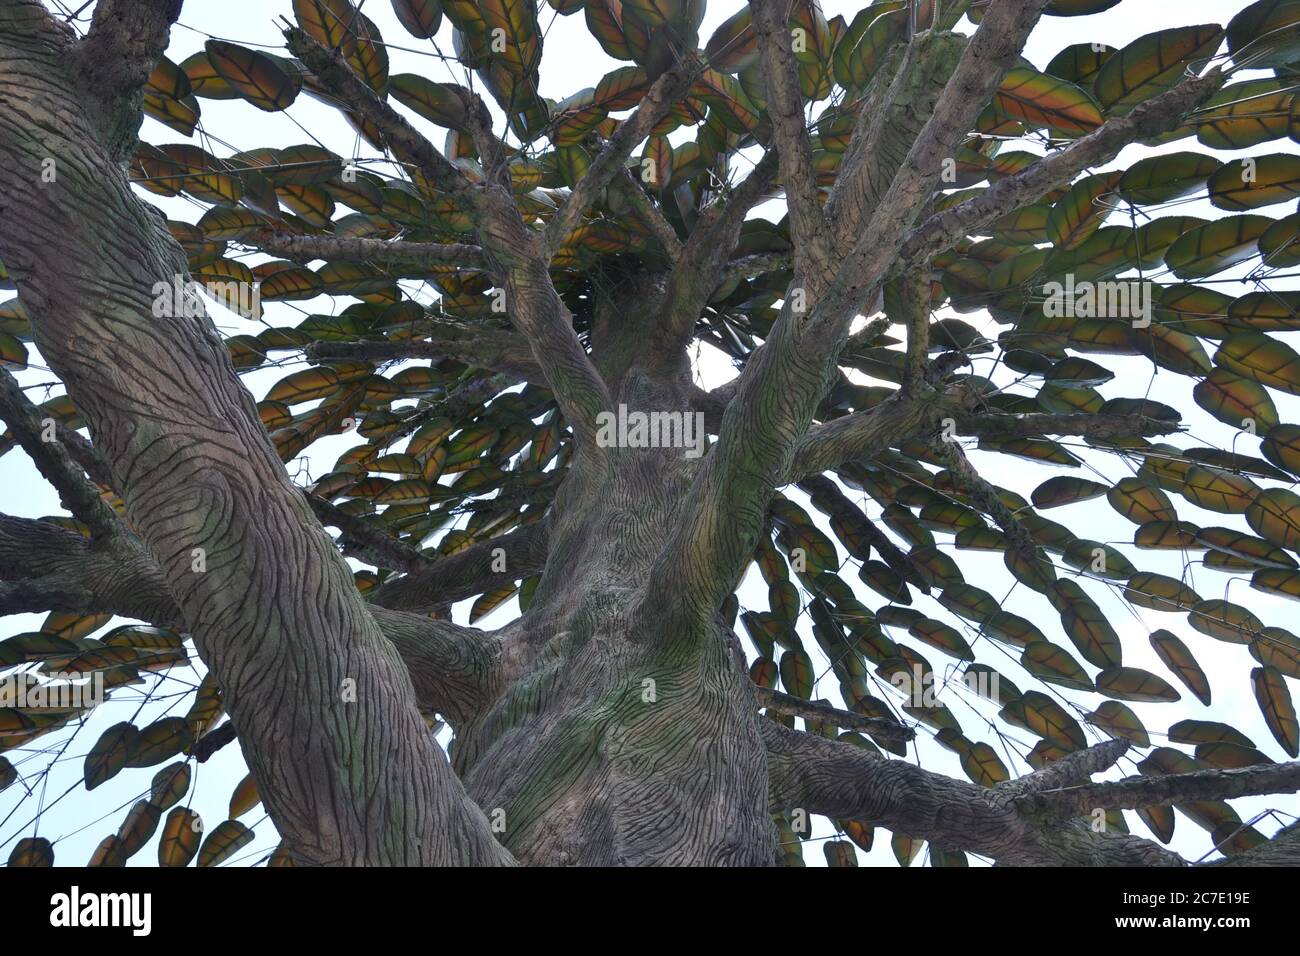 Albero di ferro e acciaio fatto a mano, con vista dal basso verso l'alto, che mostra tronchi, rami e foglie di ferro e acciaio, su una fattoria di Ecoturismo, Brasile, Sud America Foto Stock